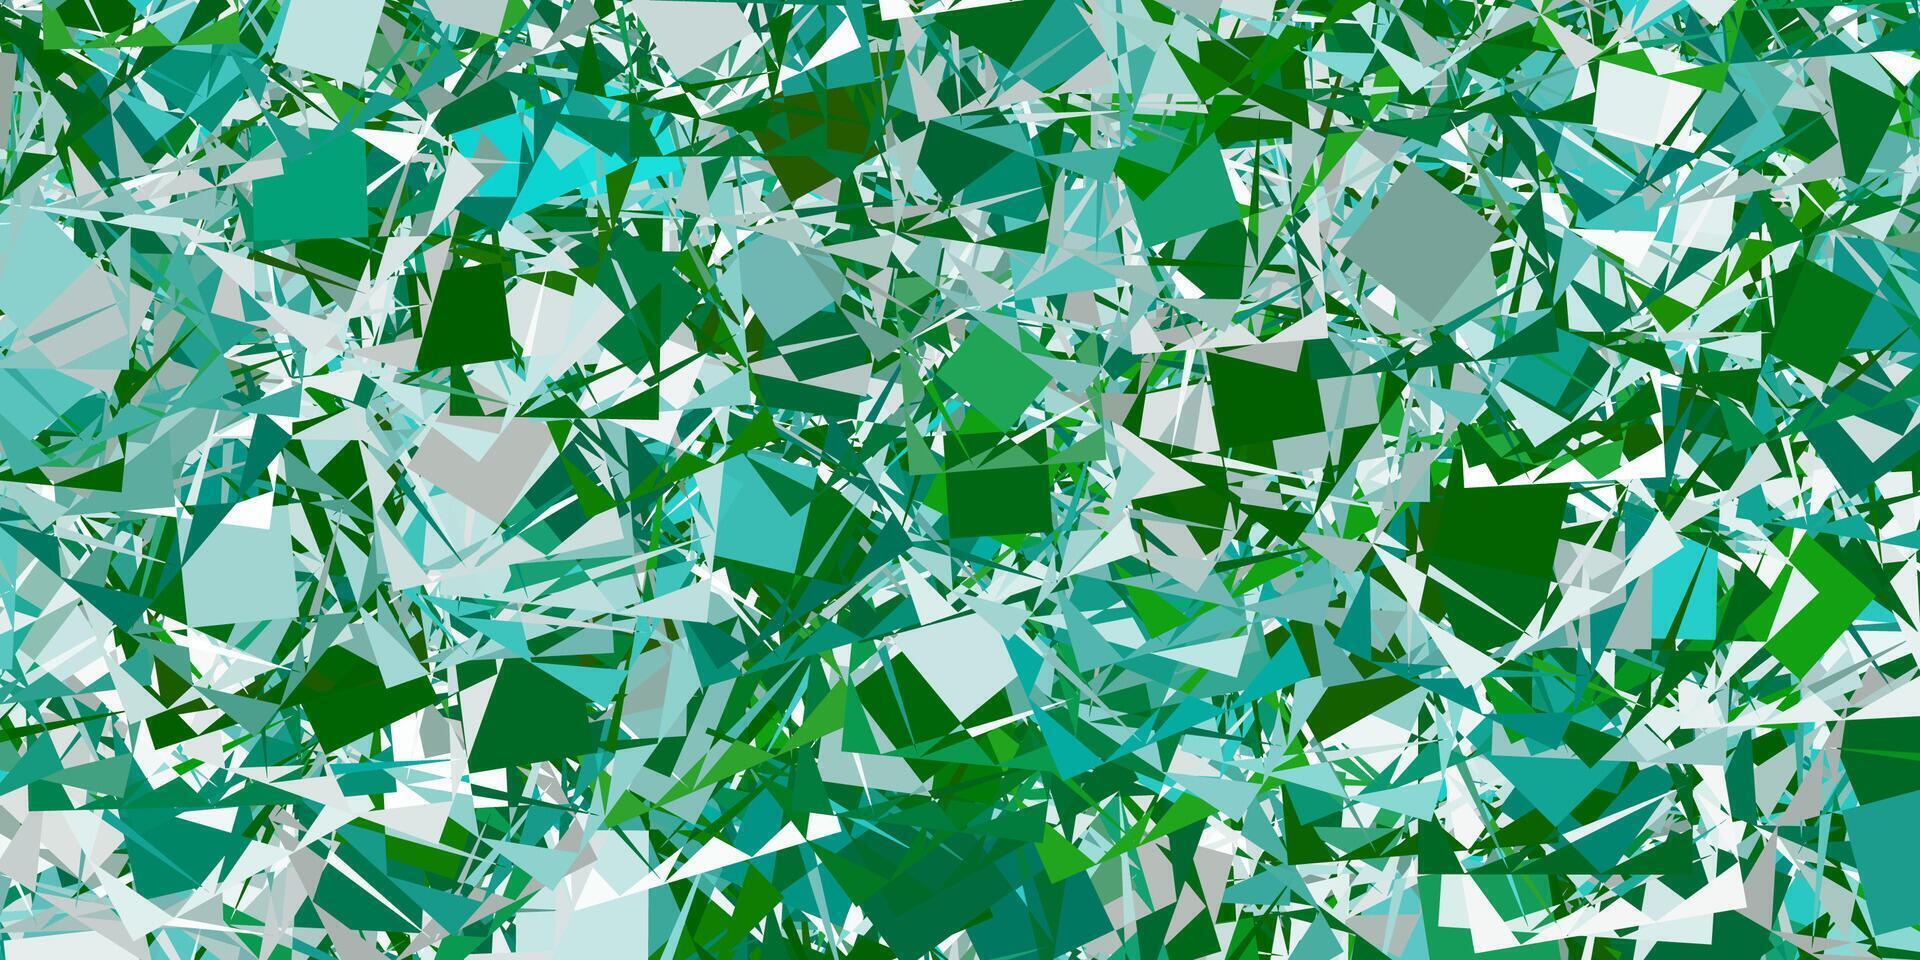 disposition de vecteur vert clair avec des formes triangulaires.